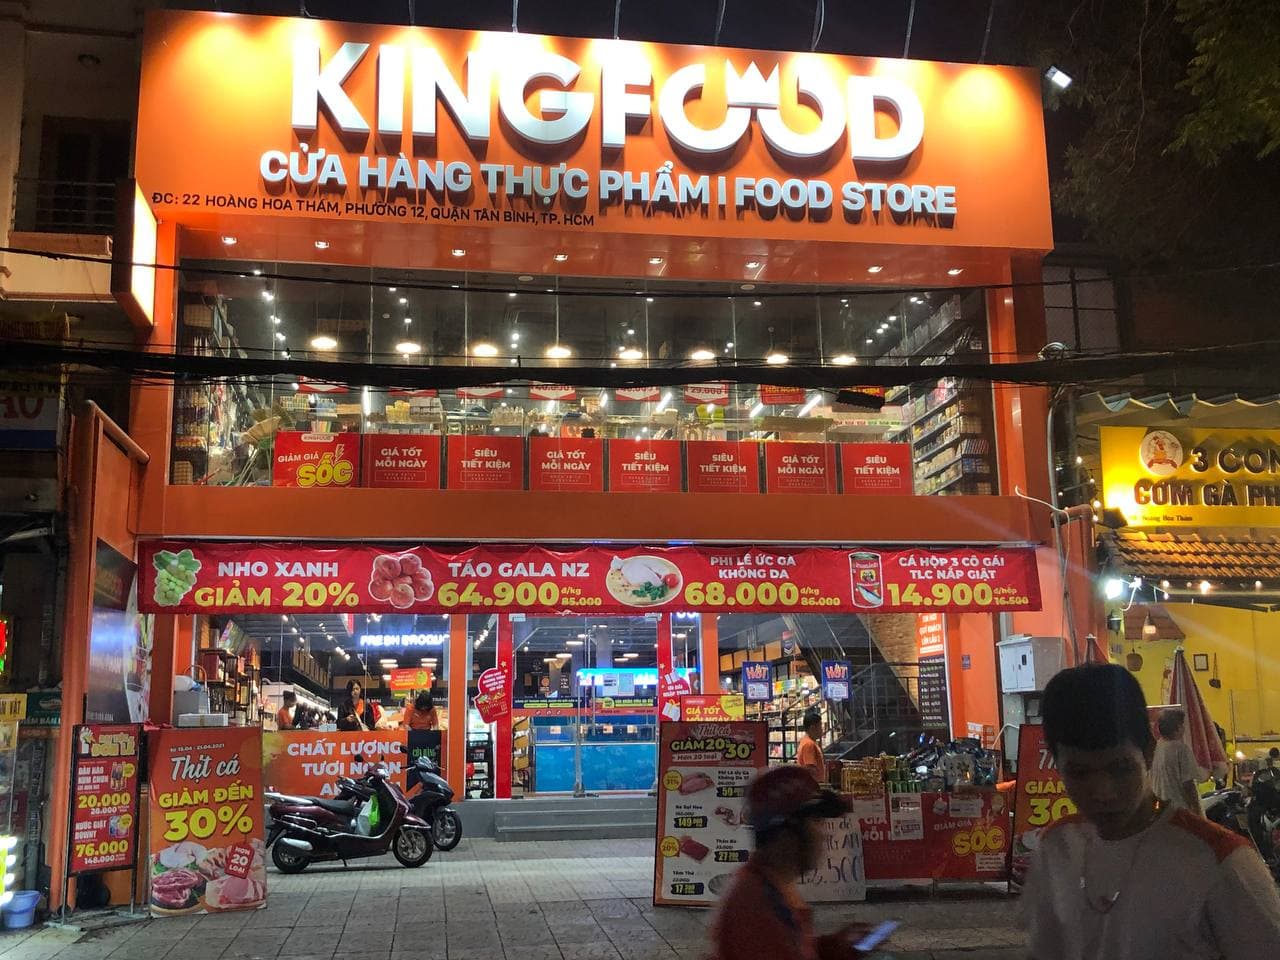 Kingfoodmart Hoàng Hoa Thám, Quận Tân Bình